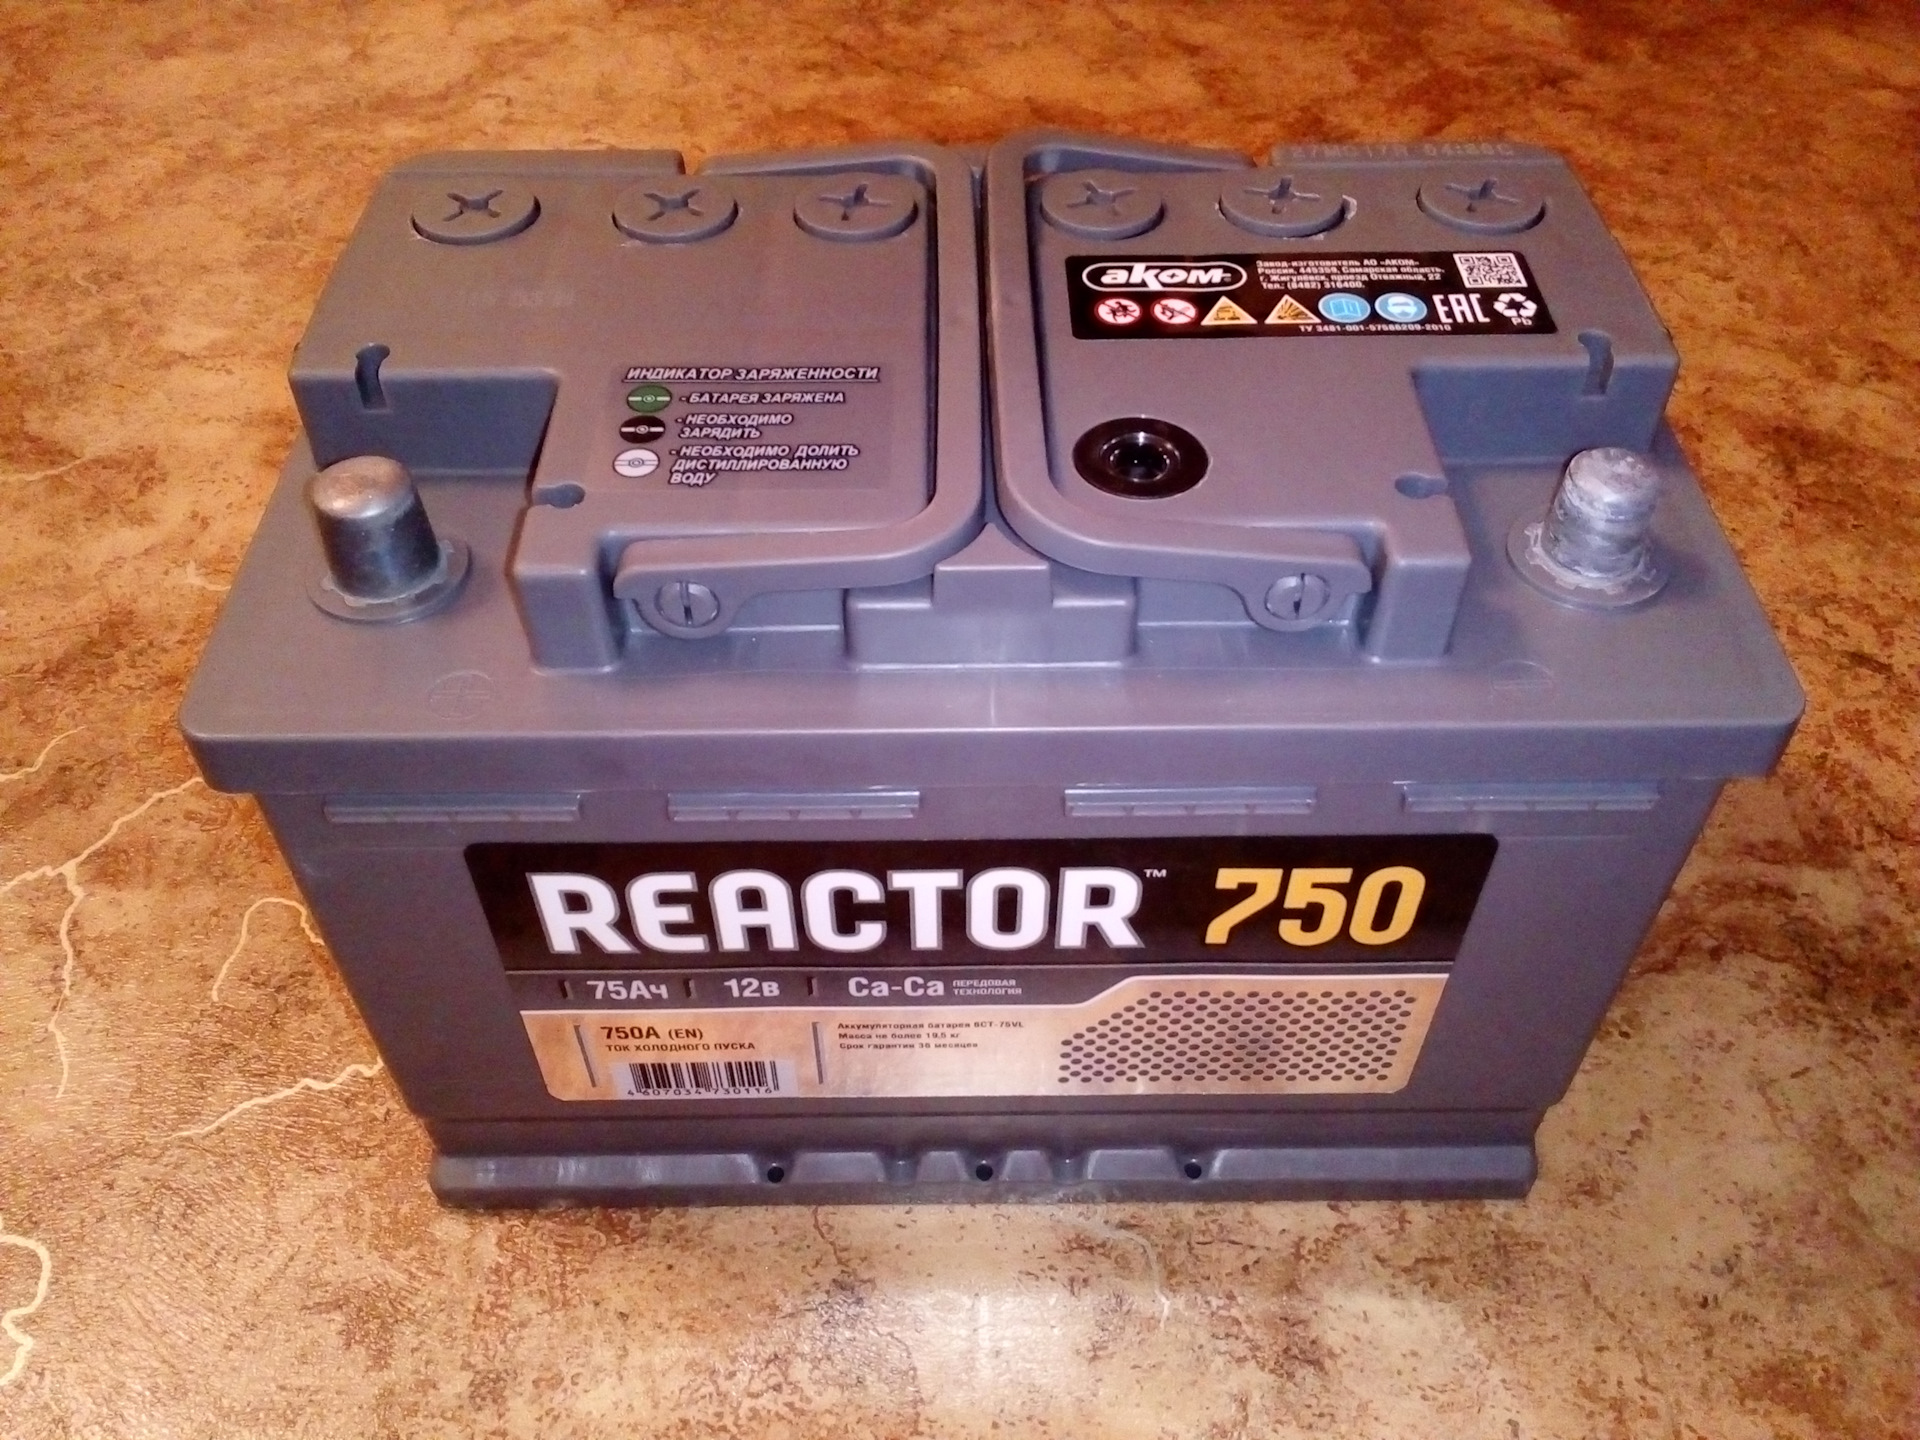 Аком 75ач. АКБ 6ст-75 Аком Reactor 750а + -. Аккумулятор реактор 750 75 Ач. АКБ Аком реактор 75. Аккумулятор 75ач Аком.